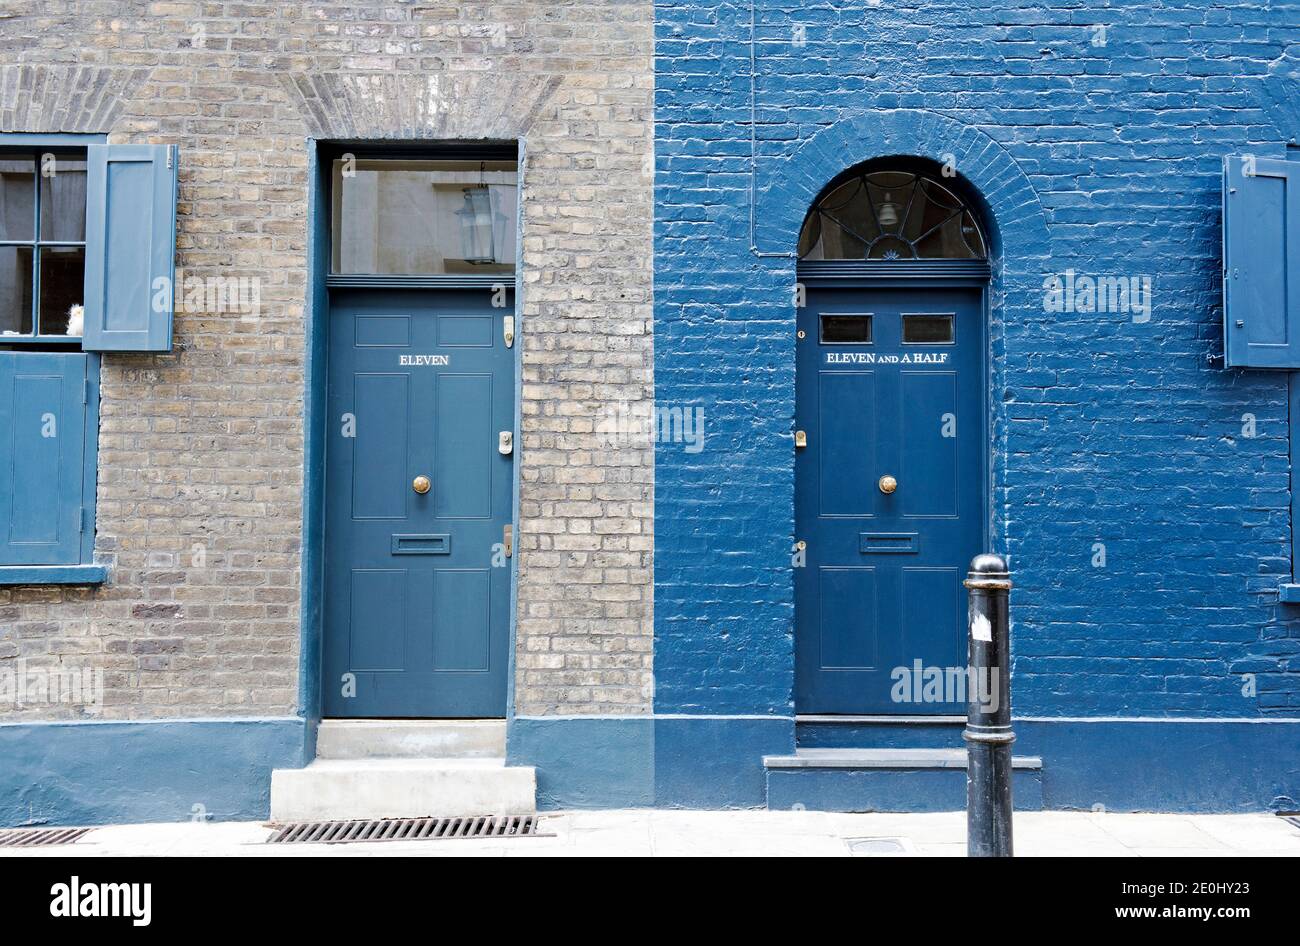 Eingangstüren und Türen von zwei georgischen Stadthäusern Nummern Eleven und Eleven und eine Hälfte Fournier Street, Spitalfields London Borough of Tower Hamlet Stockfoto